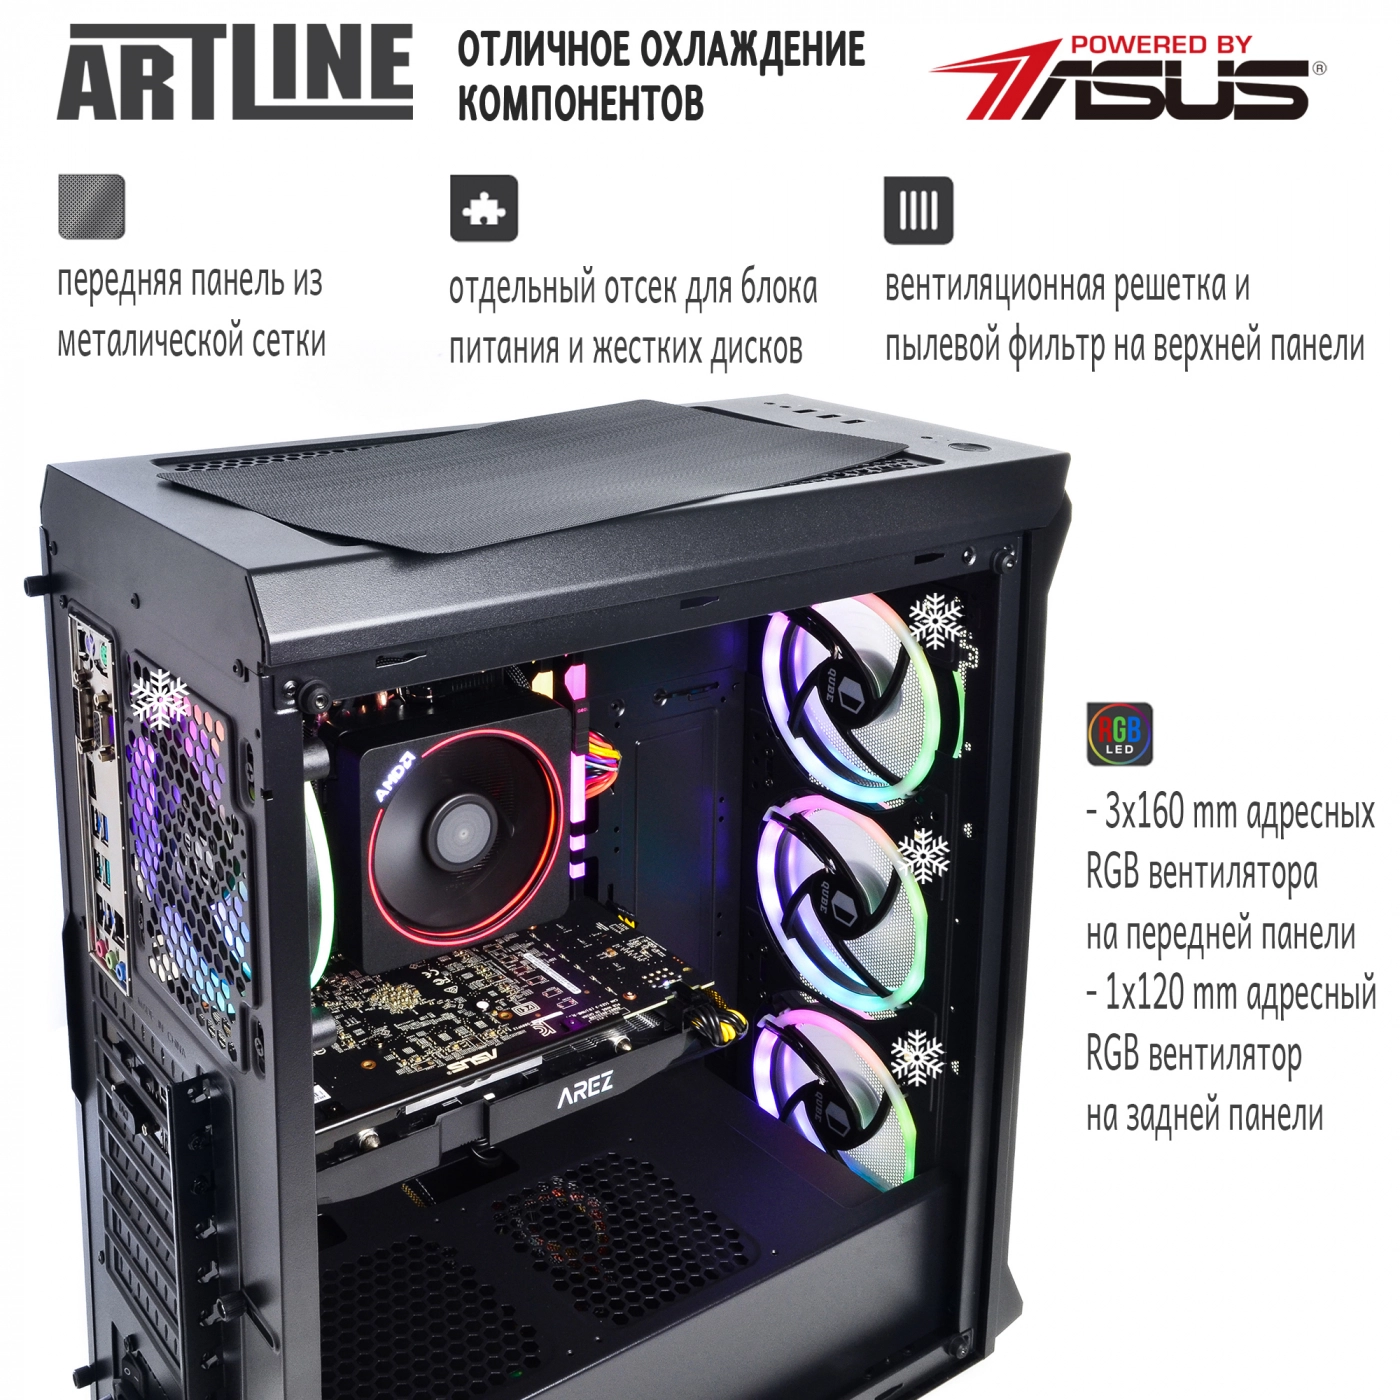 Купить Компьютер ARTLINE Gaming X87v21 - фото 2